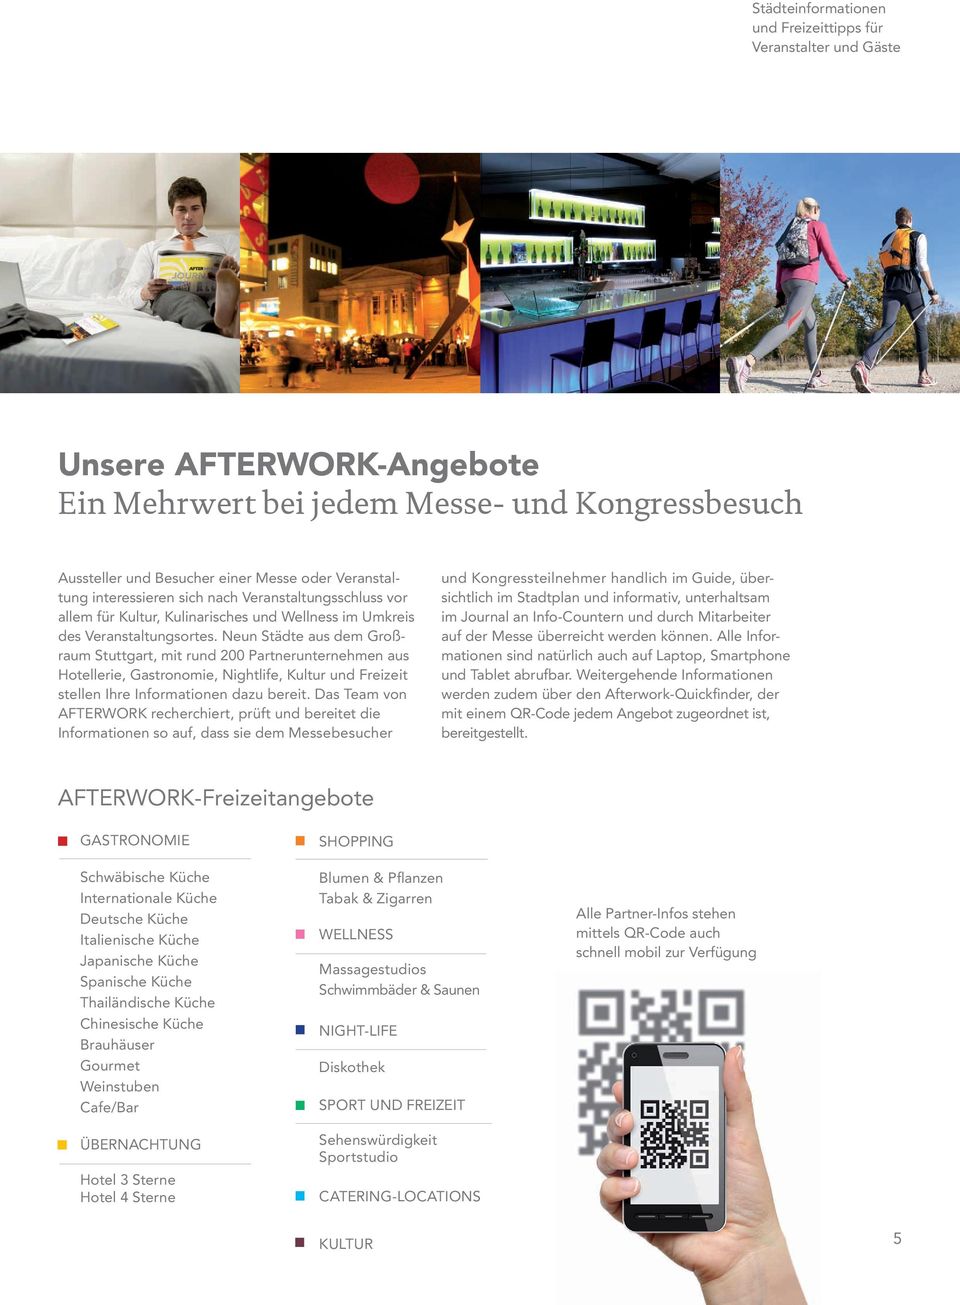 Neun Städte aus dem Großraum Stuttgart, mit rund 200 Partnerunternehmen aus Hotellerie, Gastronomie, Nightlife, Kultur und Freizeit stellen Ihre Informationen dazu bereit.